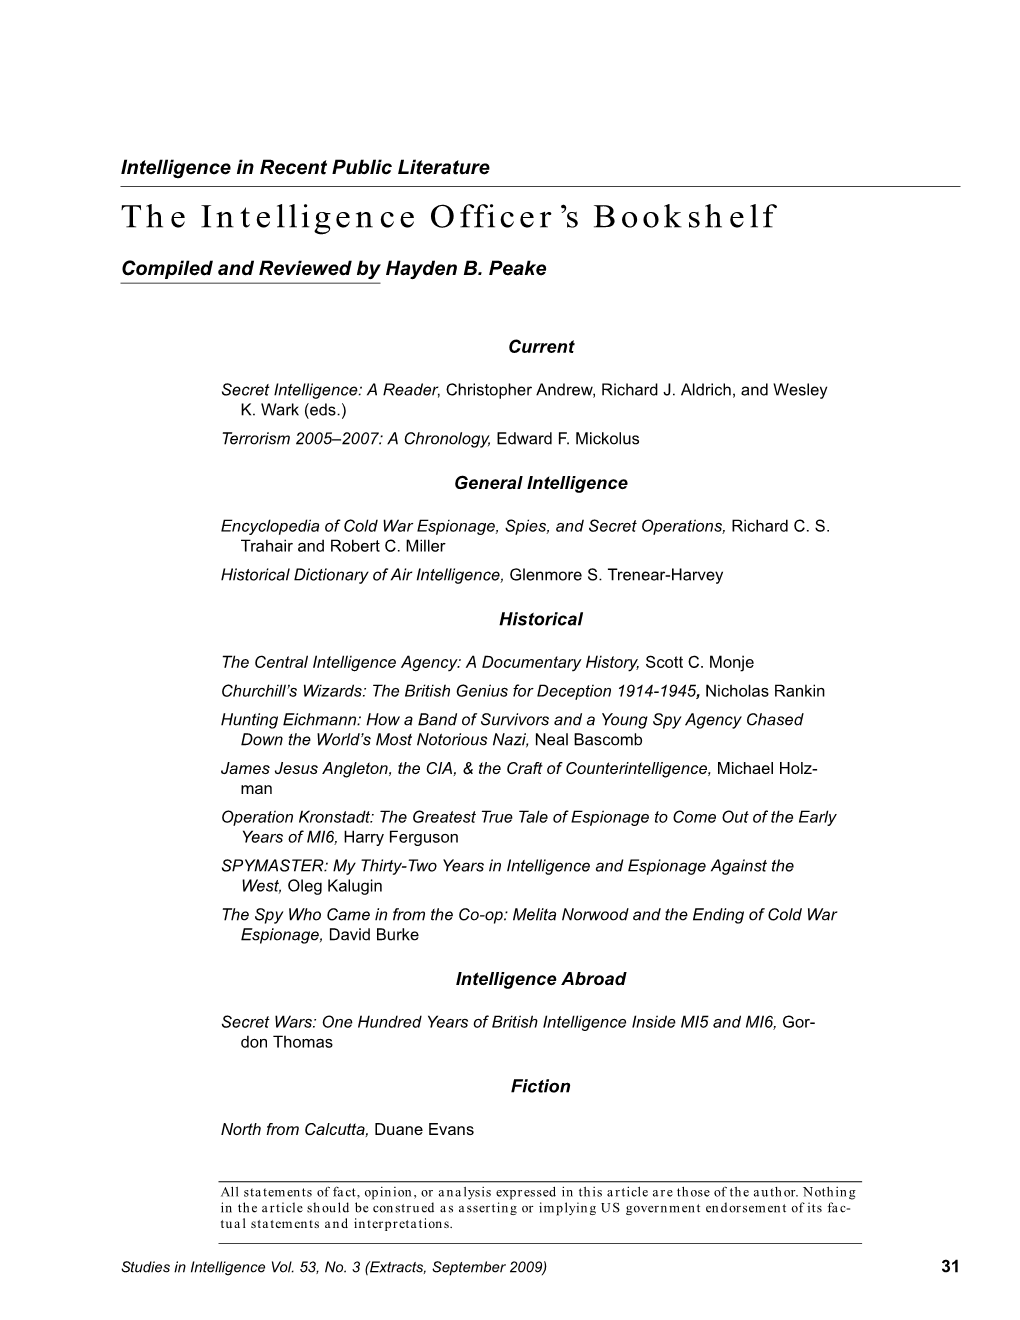 Intelligence Officer's Bookshelf V53n3